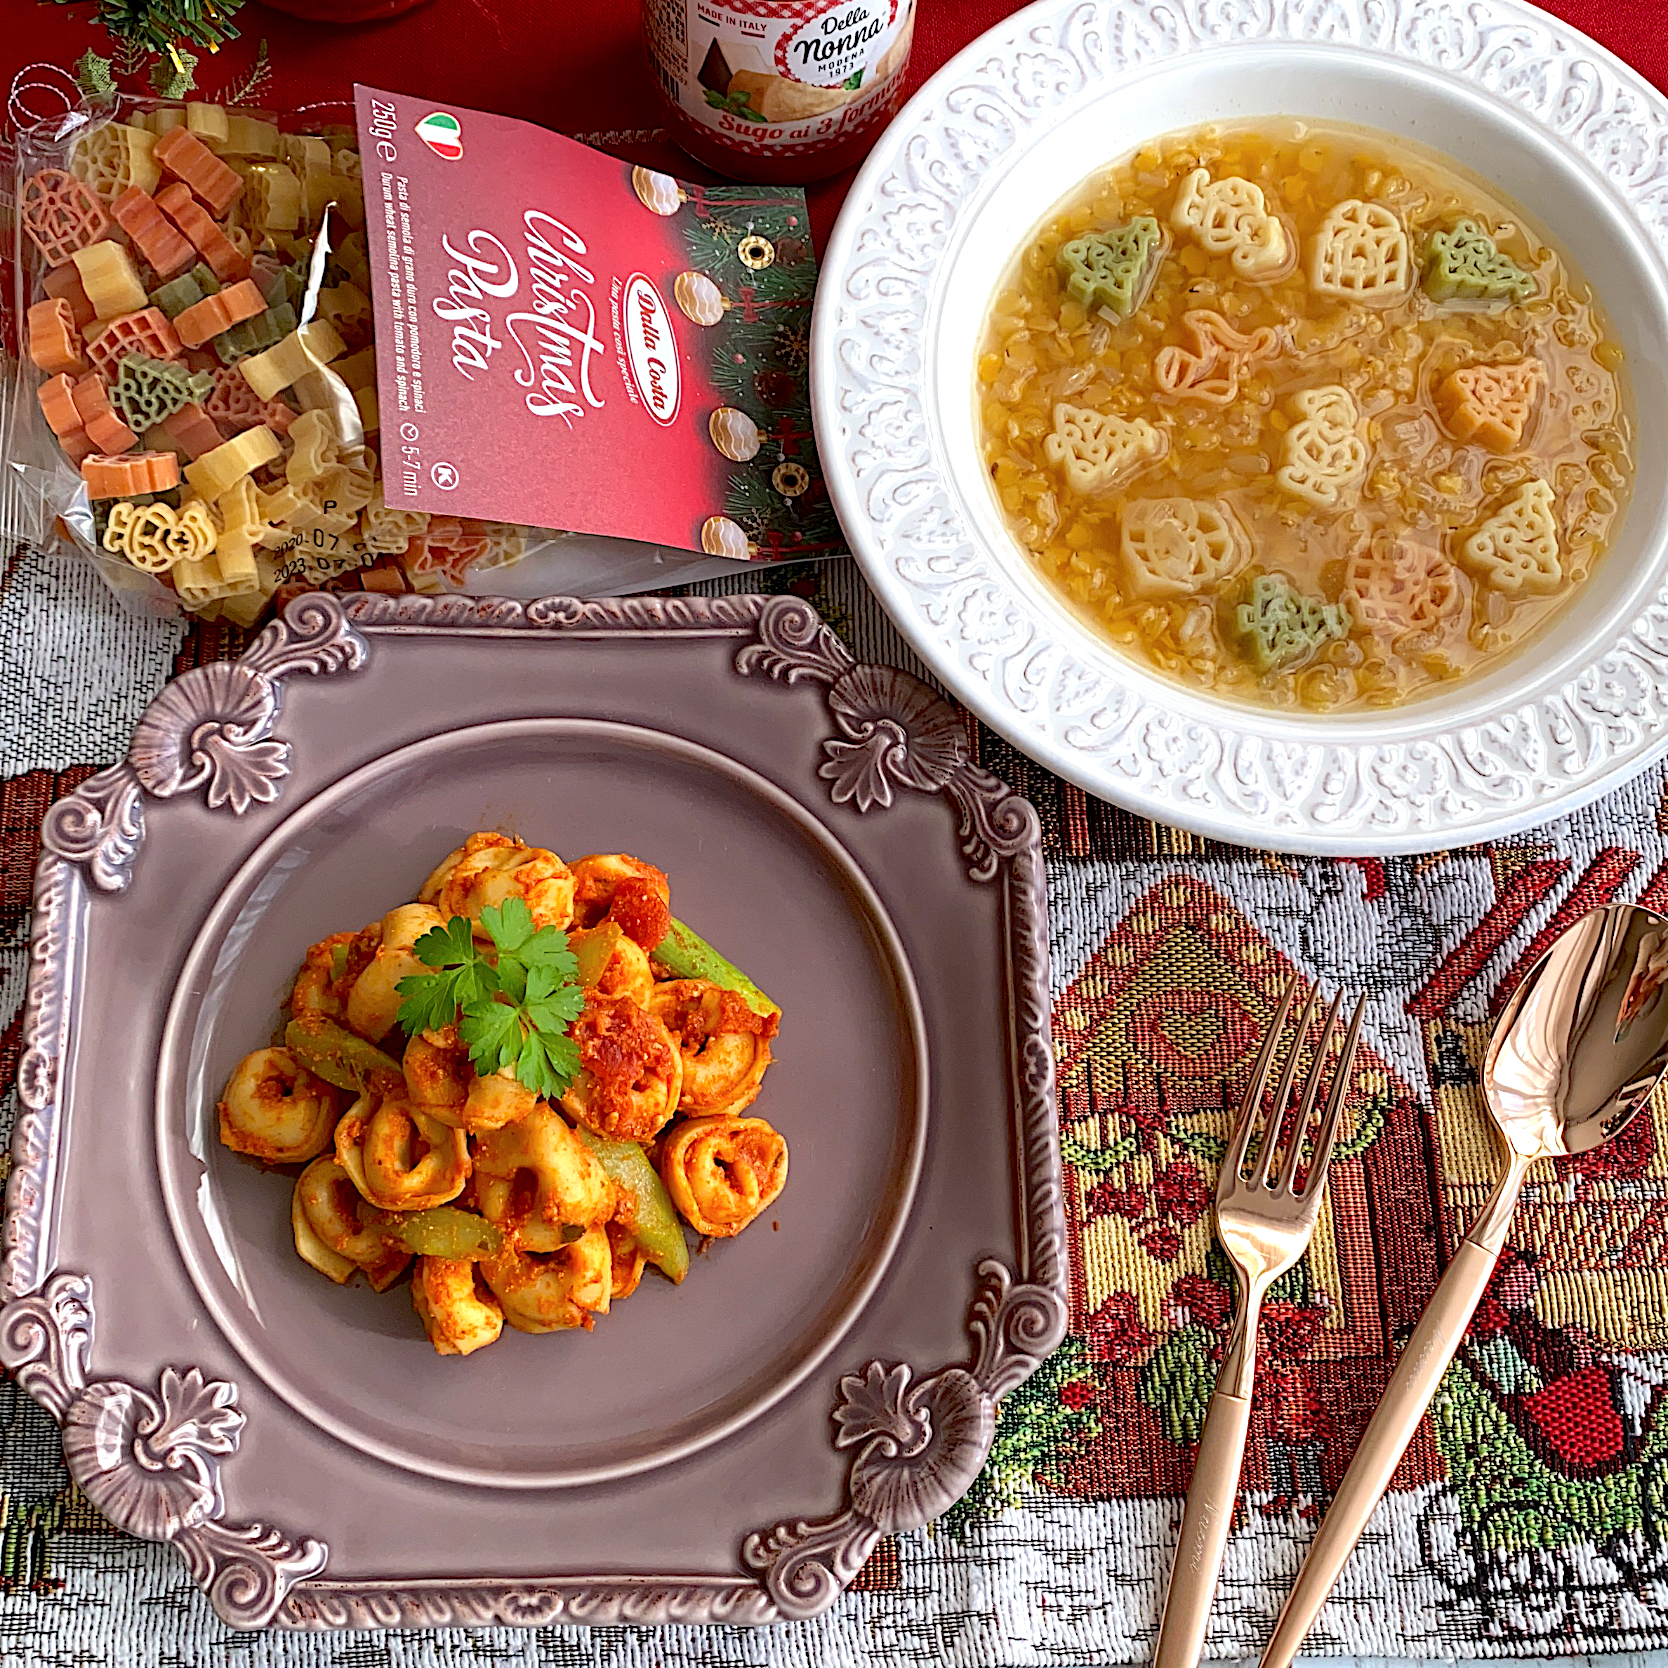 トルテリーニ&レンズ豆のスープ